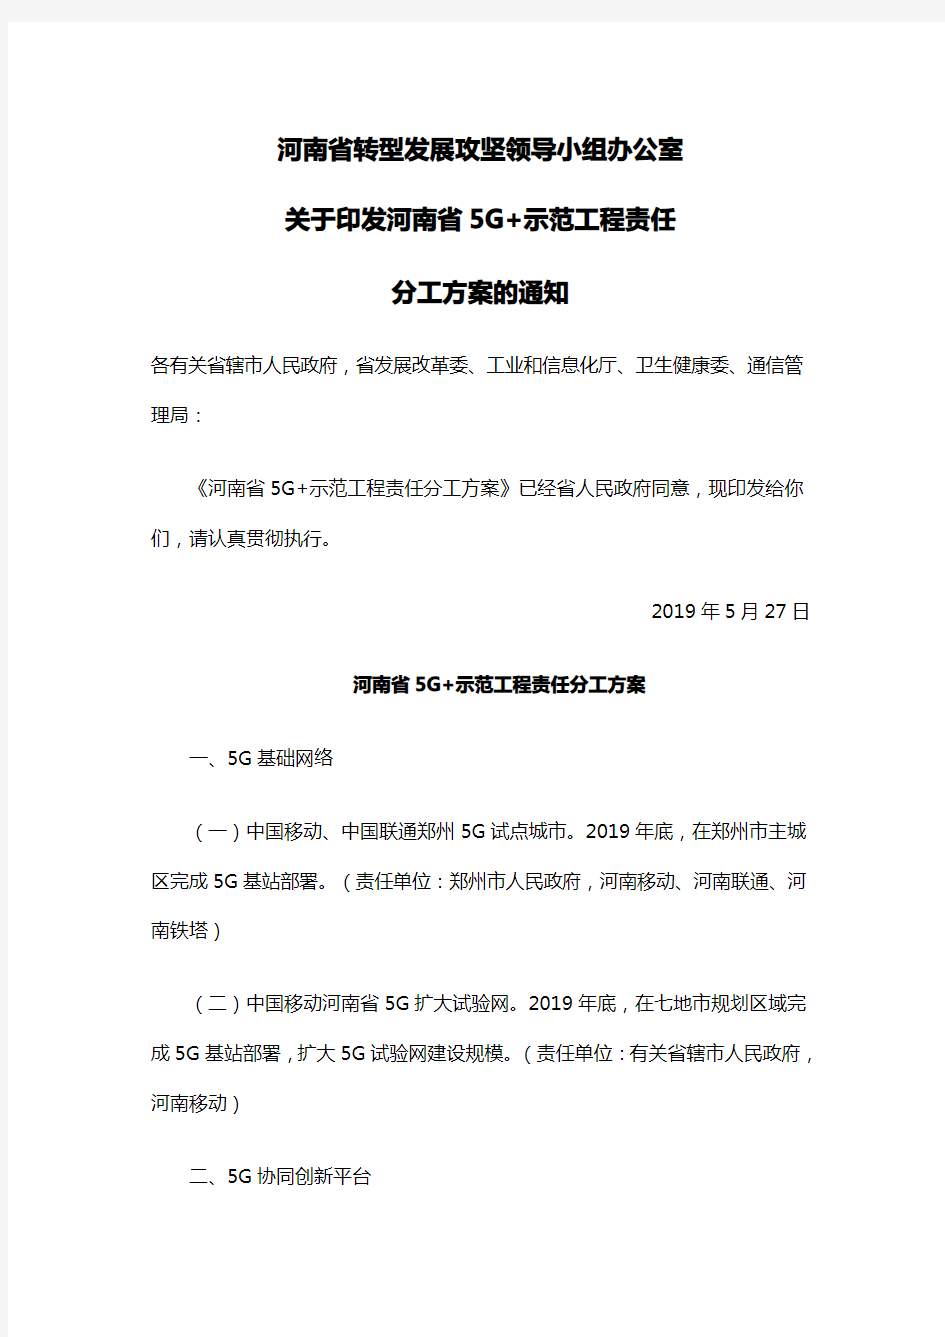 《河南省5G+示范工程责任分工方案》